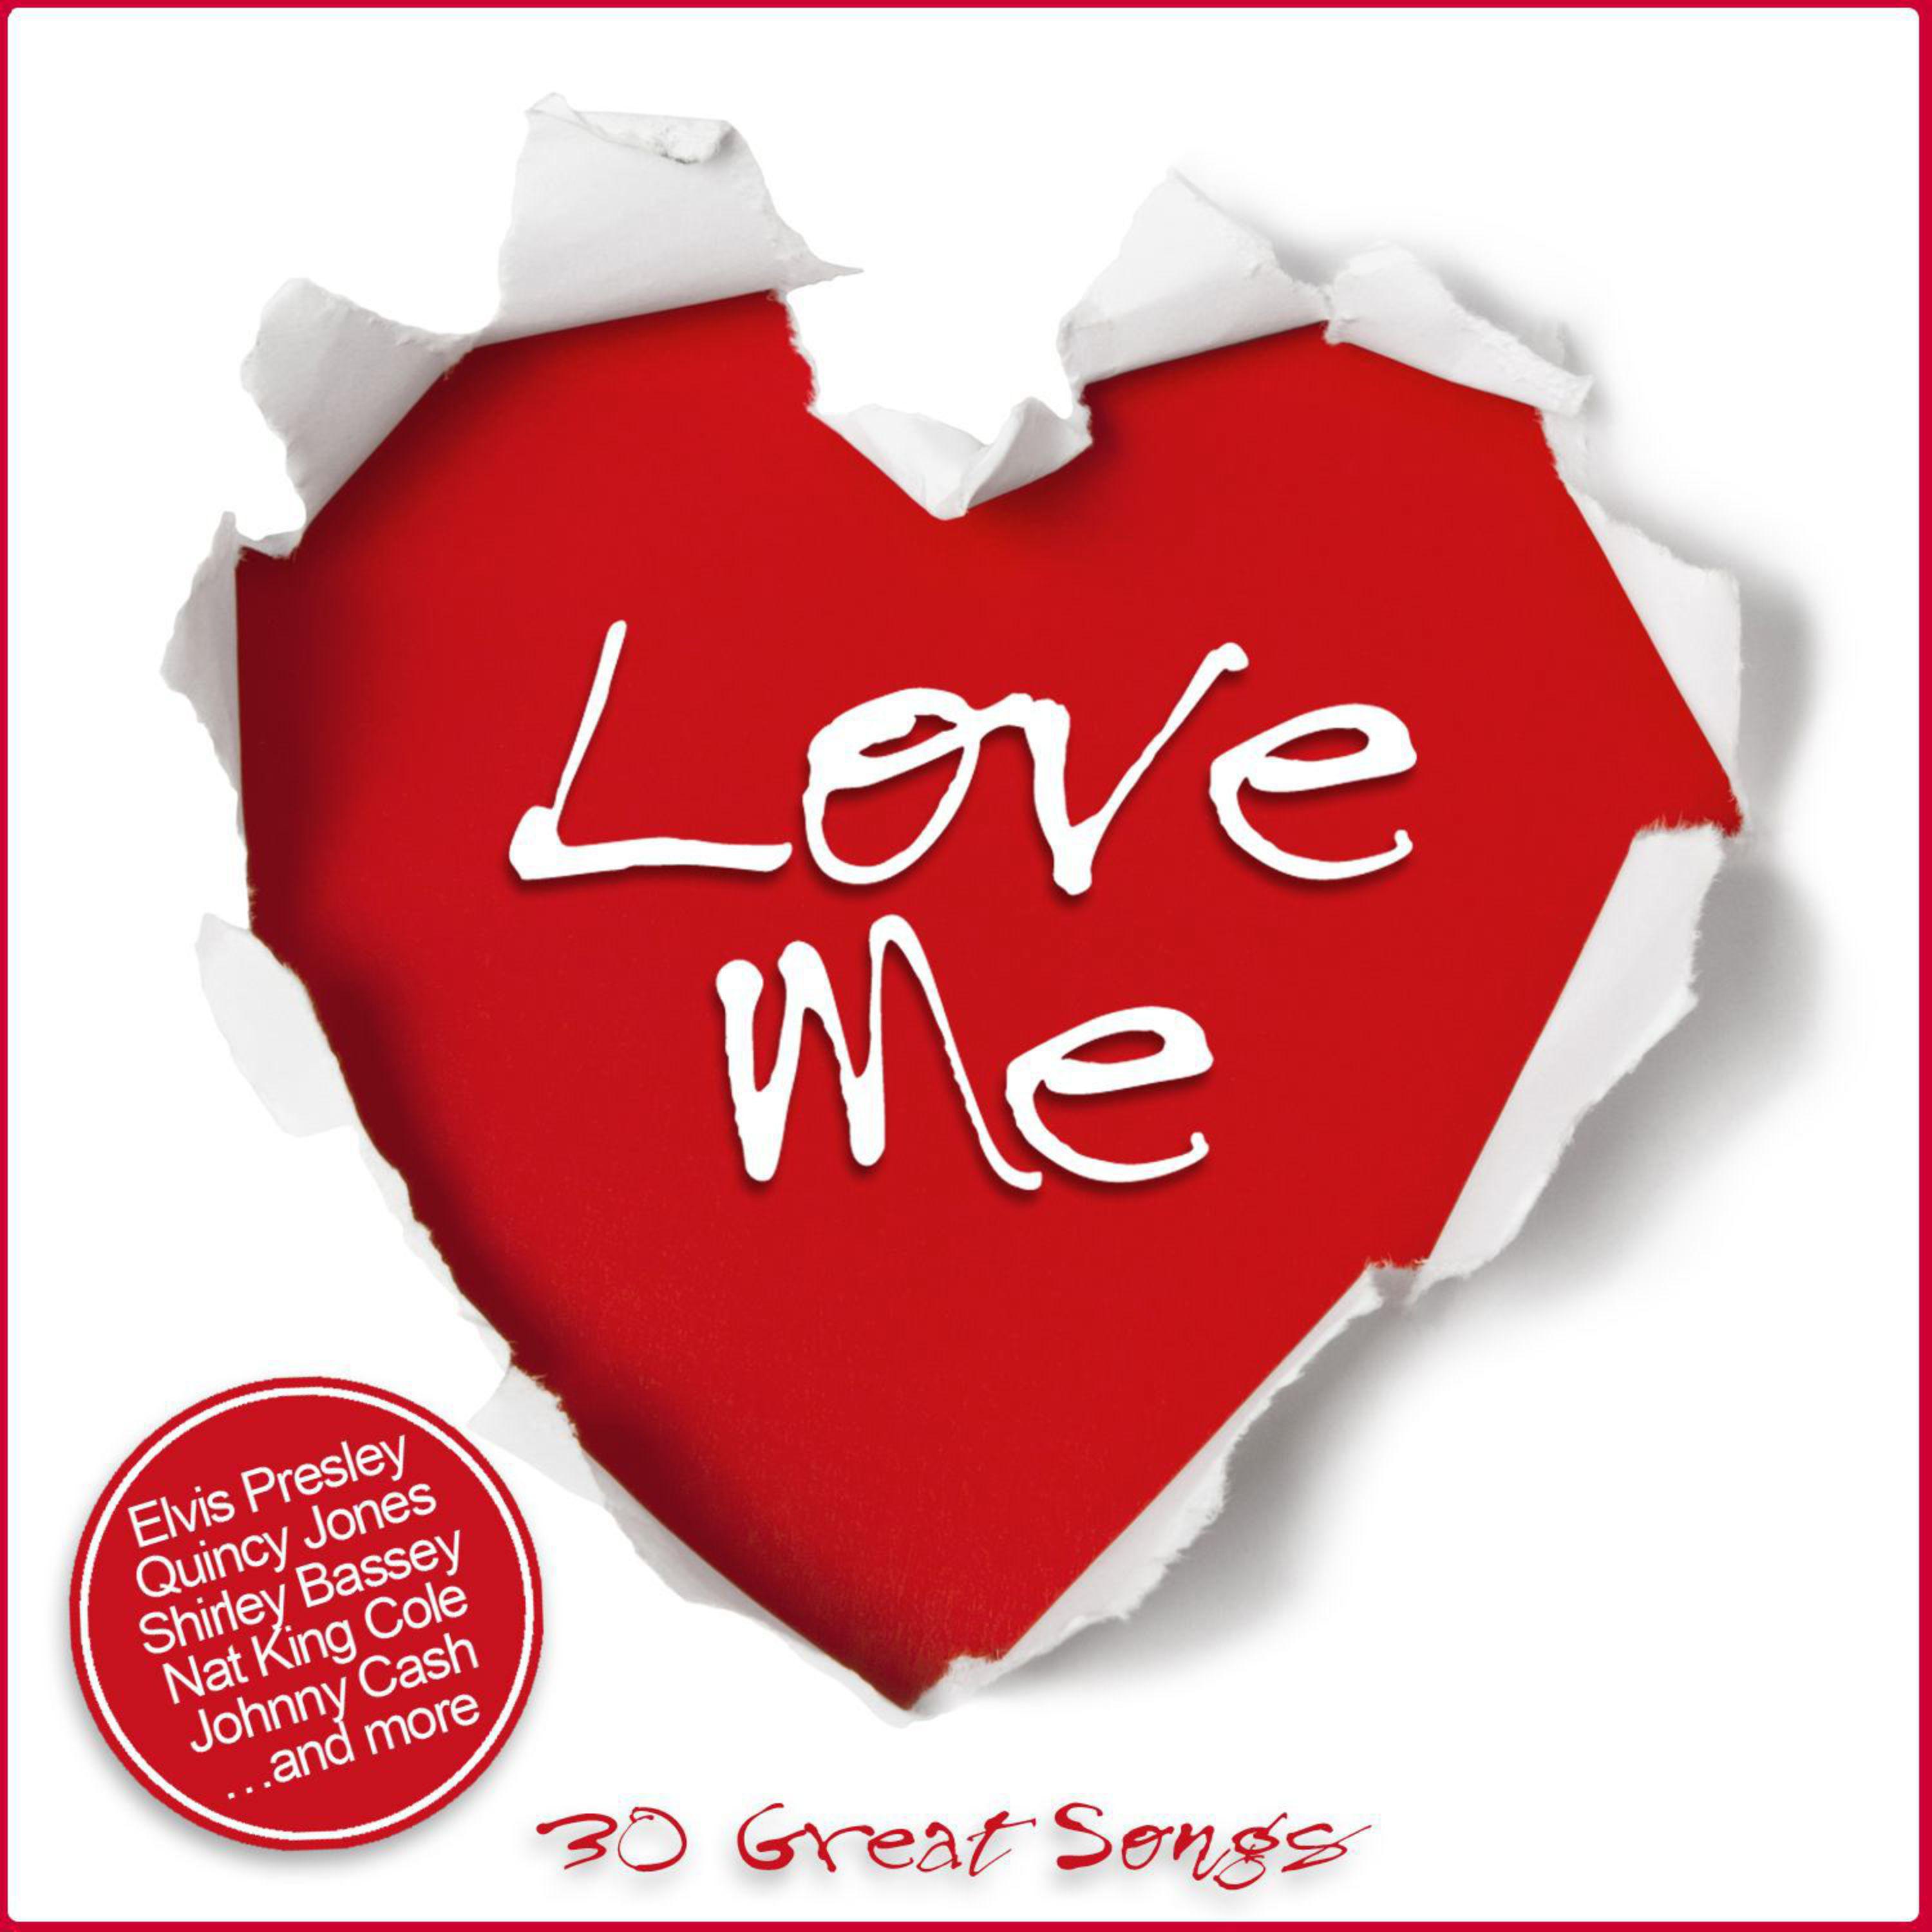 Love Me - 30 Great Songs